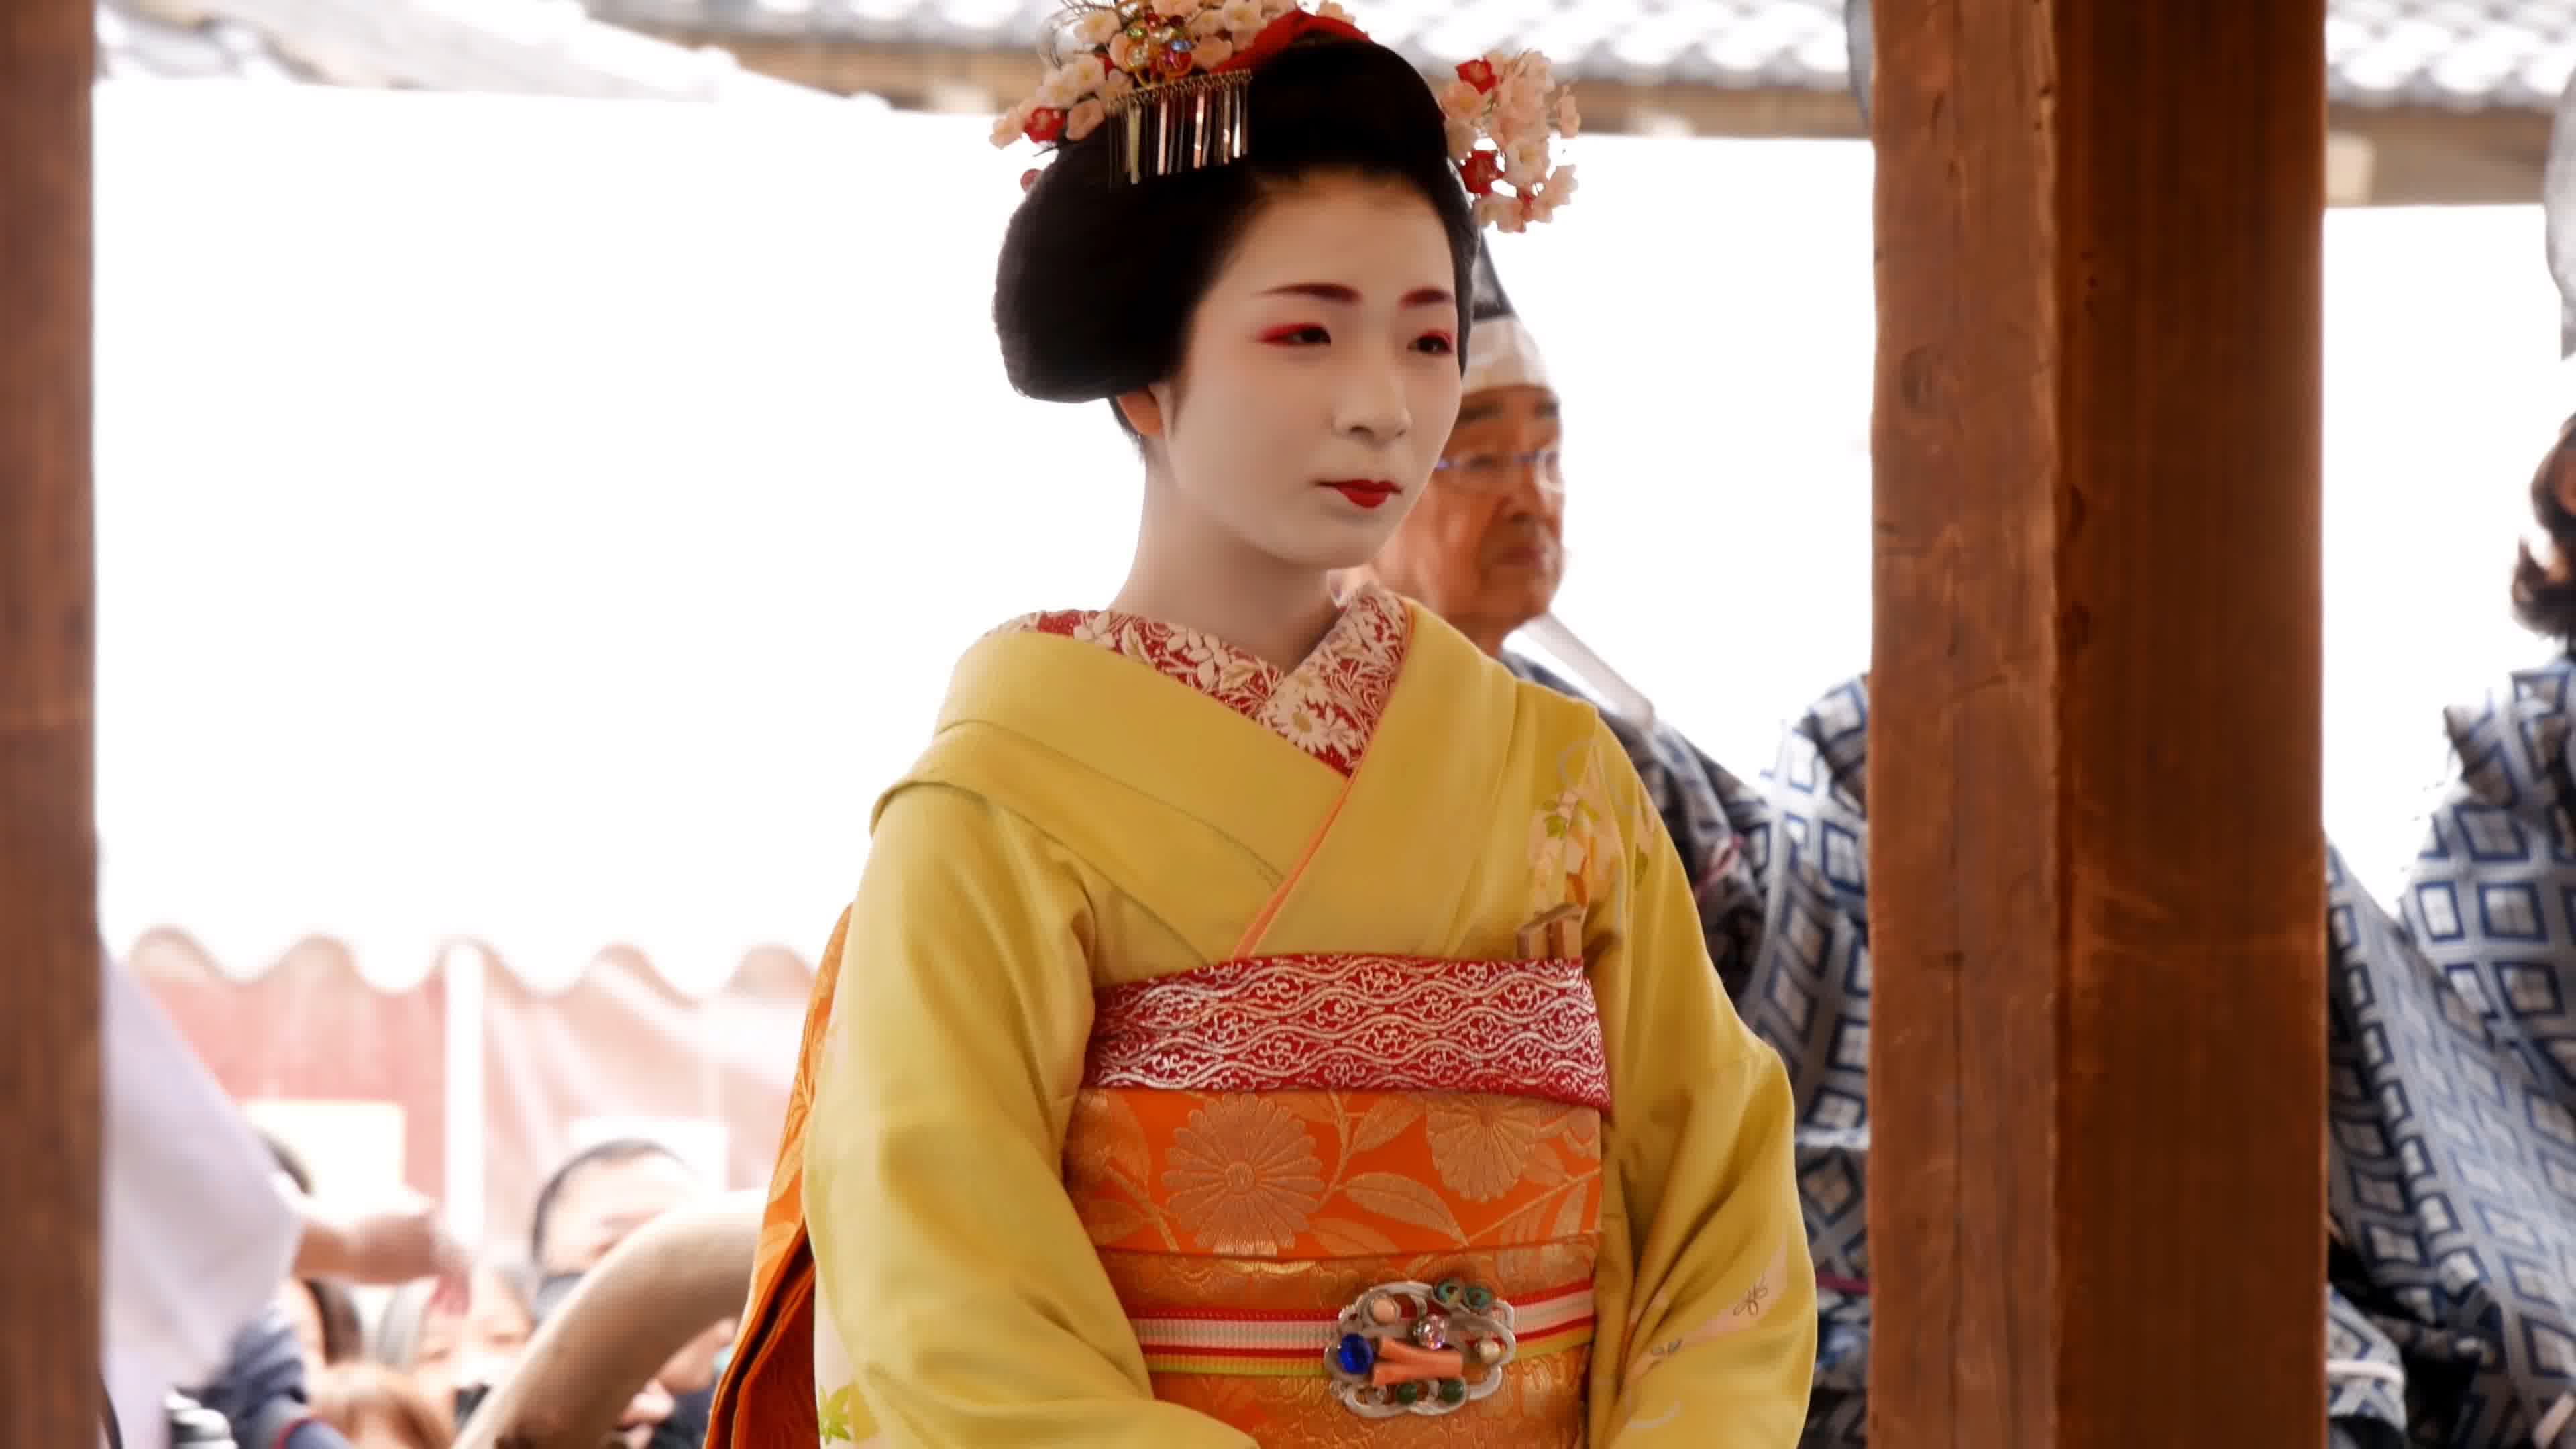 穿日本和服的年轻女人 库存图片. 图片 包括有 典雅, 和服, 调用, 妇女, 产生, 姿势, 风扇, 藏品 - 163651367